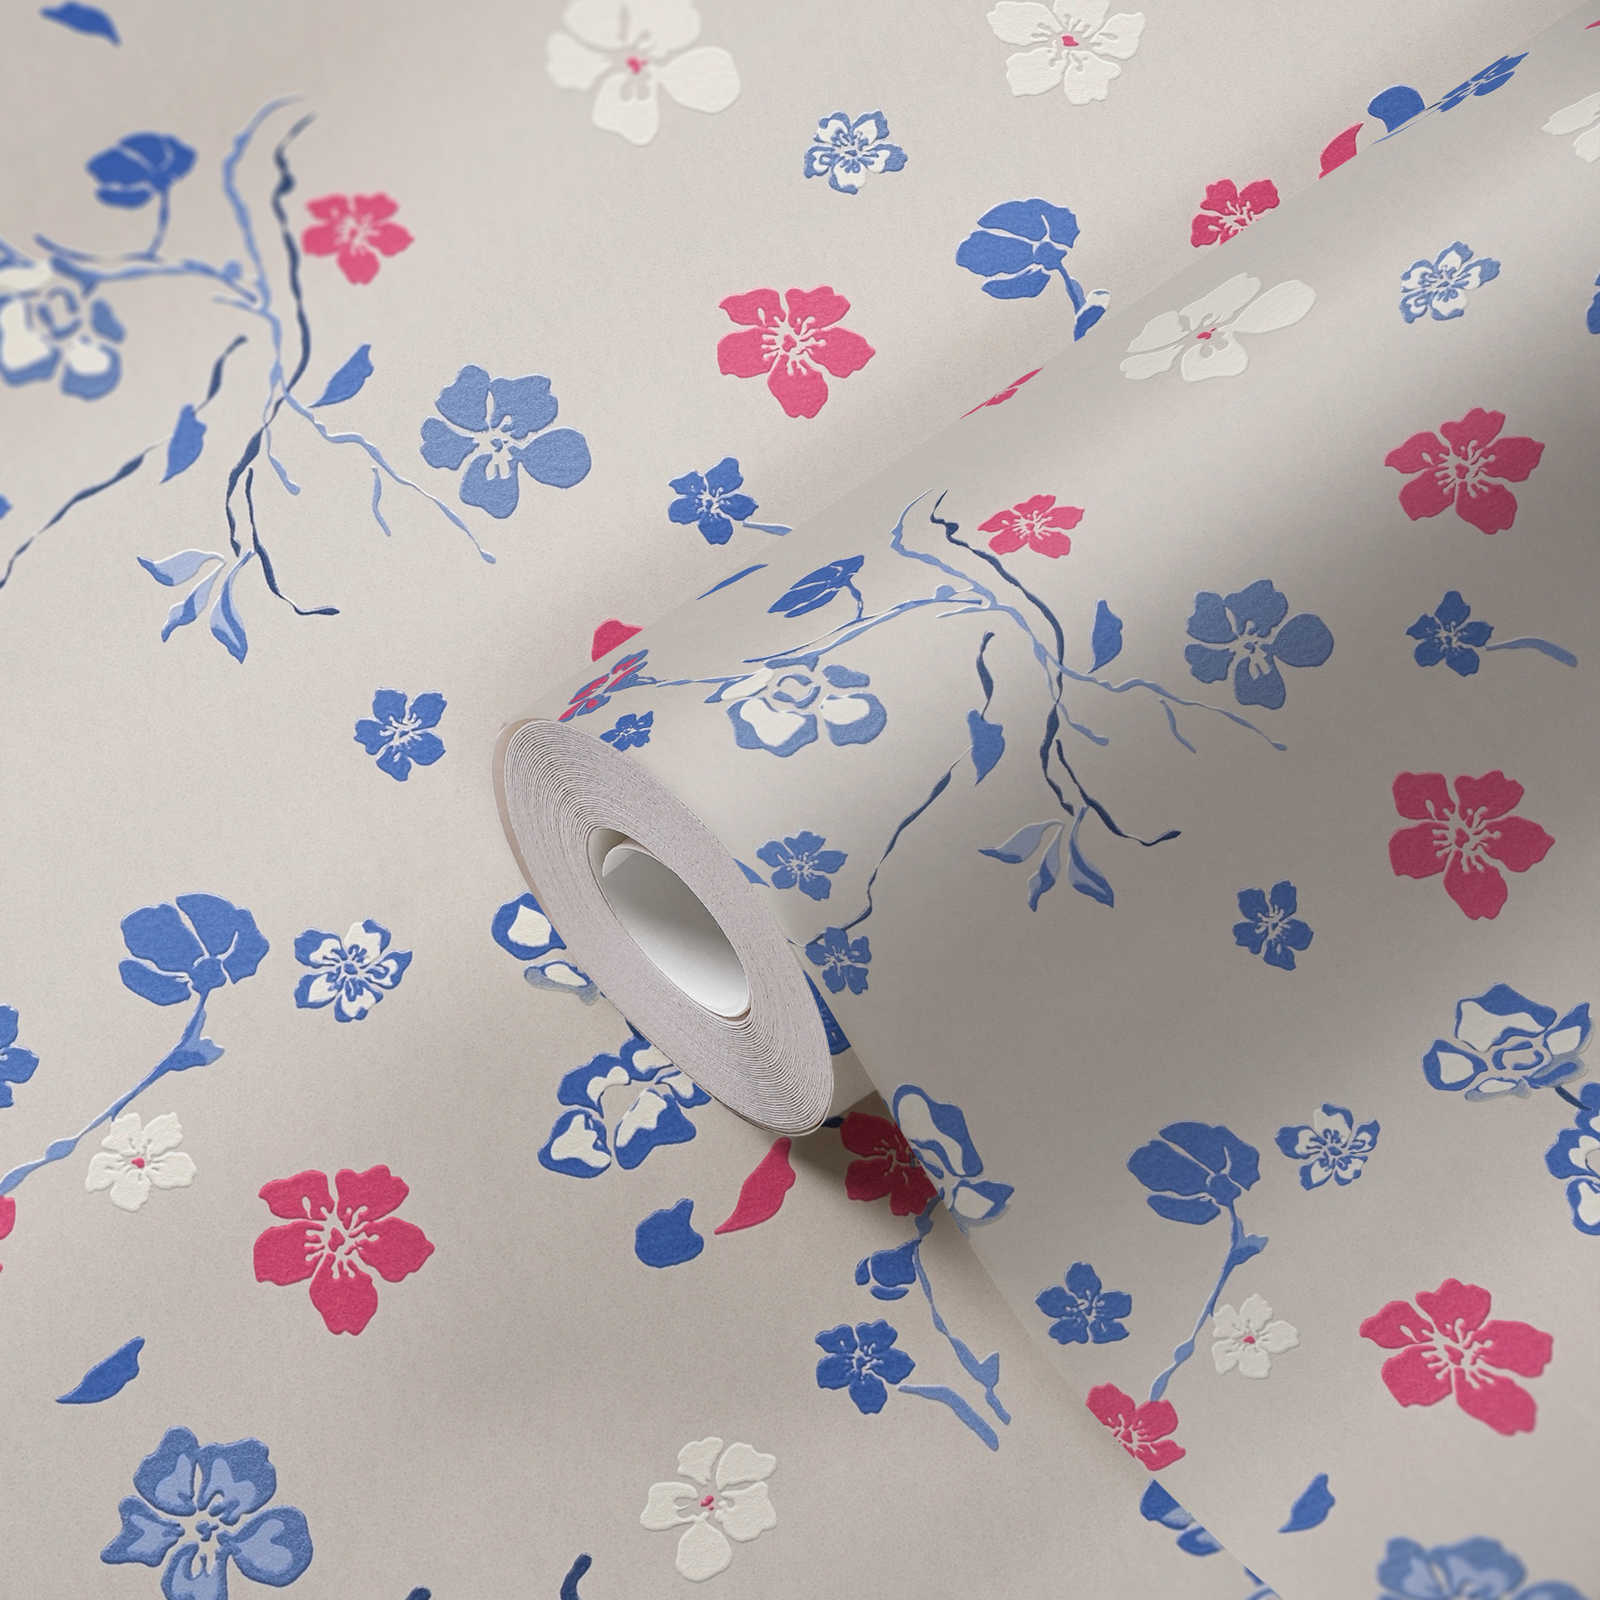             Papel pintado no tejido con alegres motivos florales - gris claro, azul, rosa
        